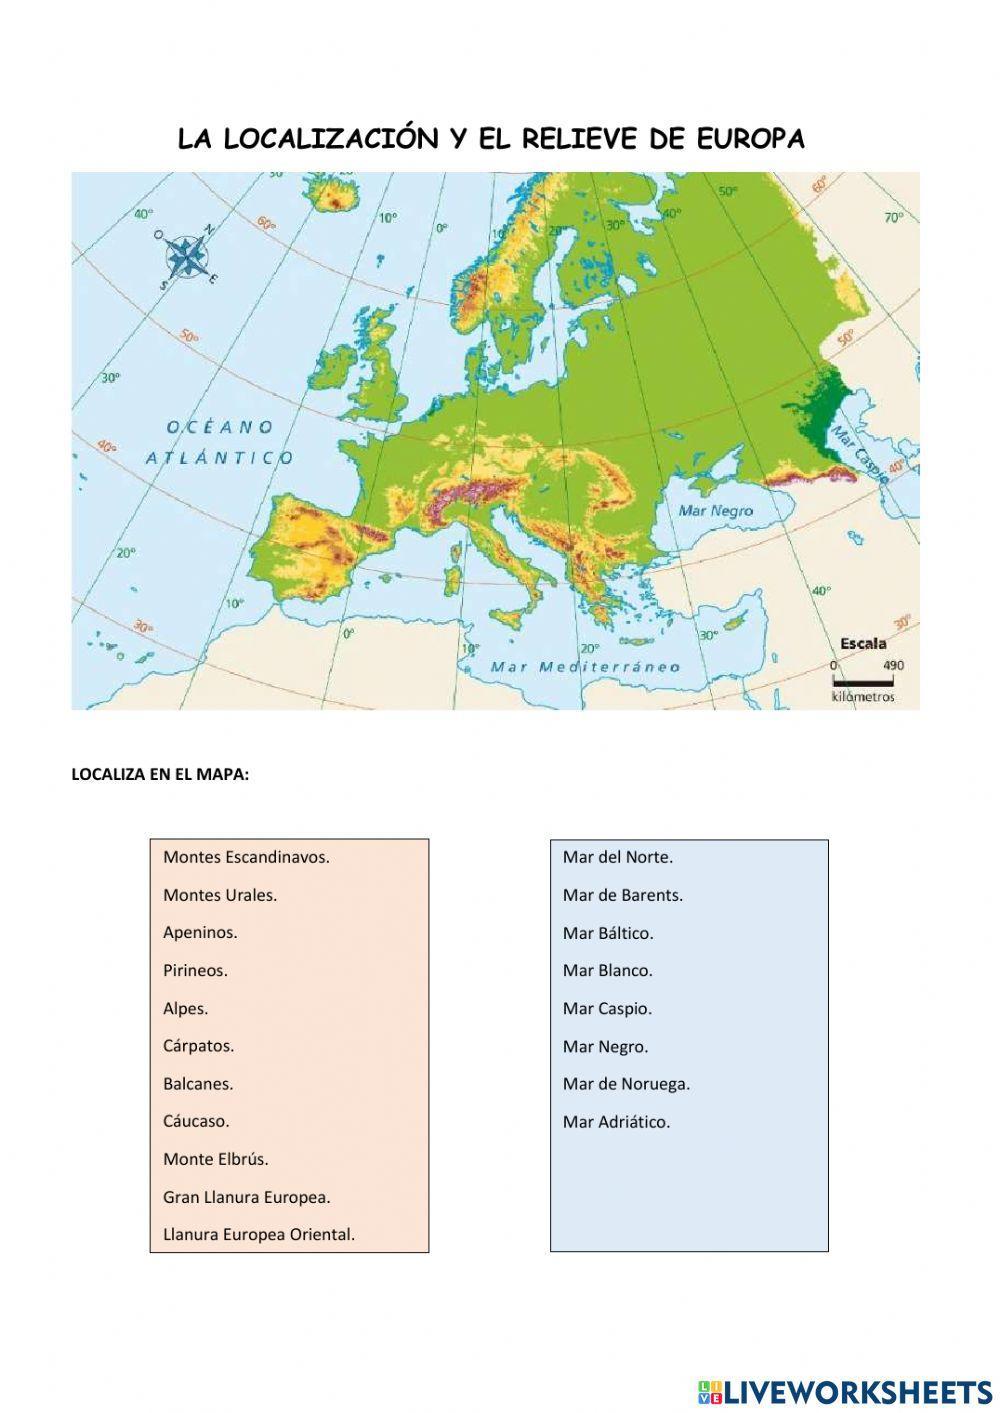 La localización y el relieve de europa